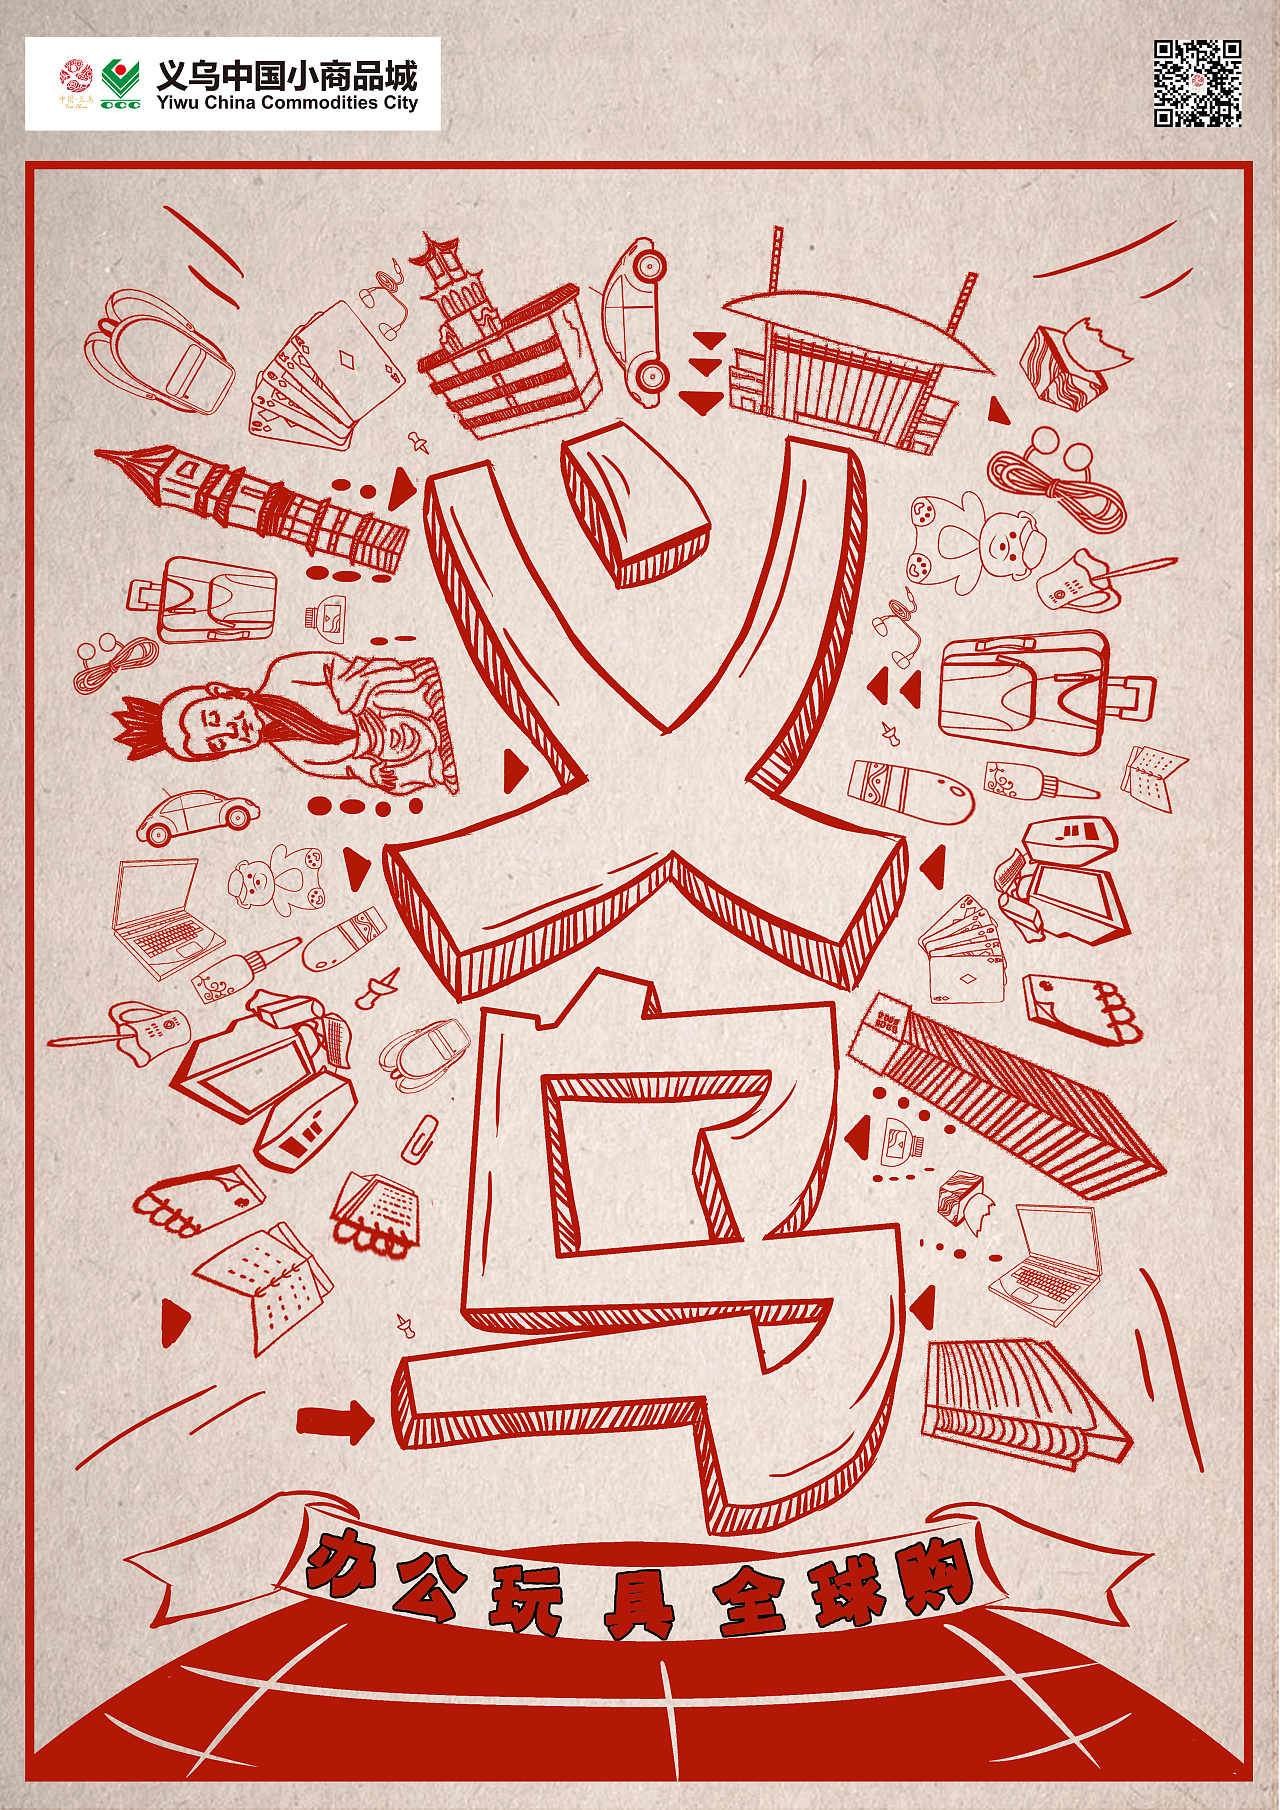 大广赛义乌logo图片